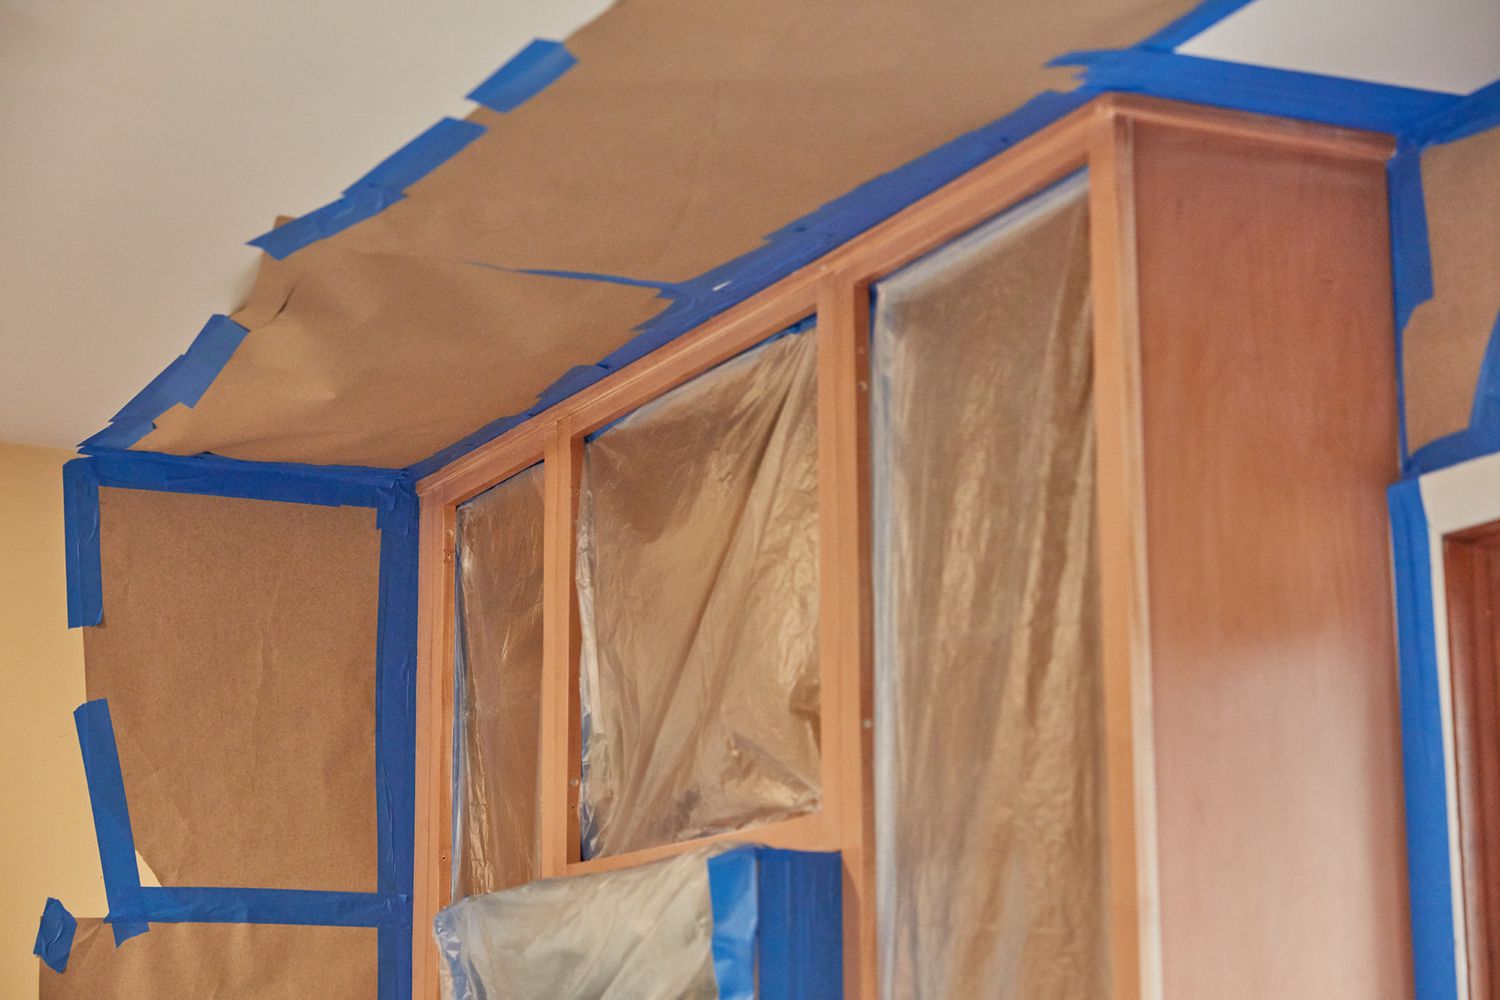 Murs et plafond de la cuisine masqués avec du ruban de peintre pour interdire de peindre dessus